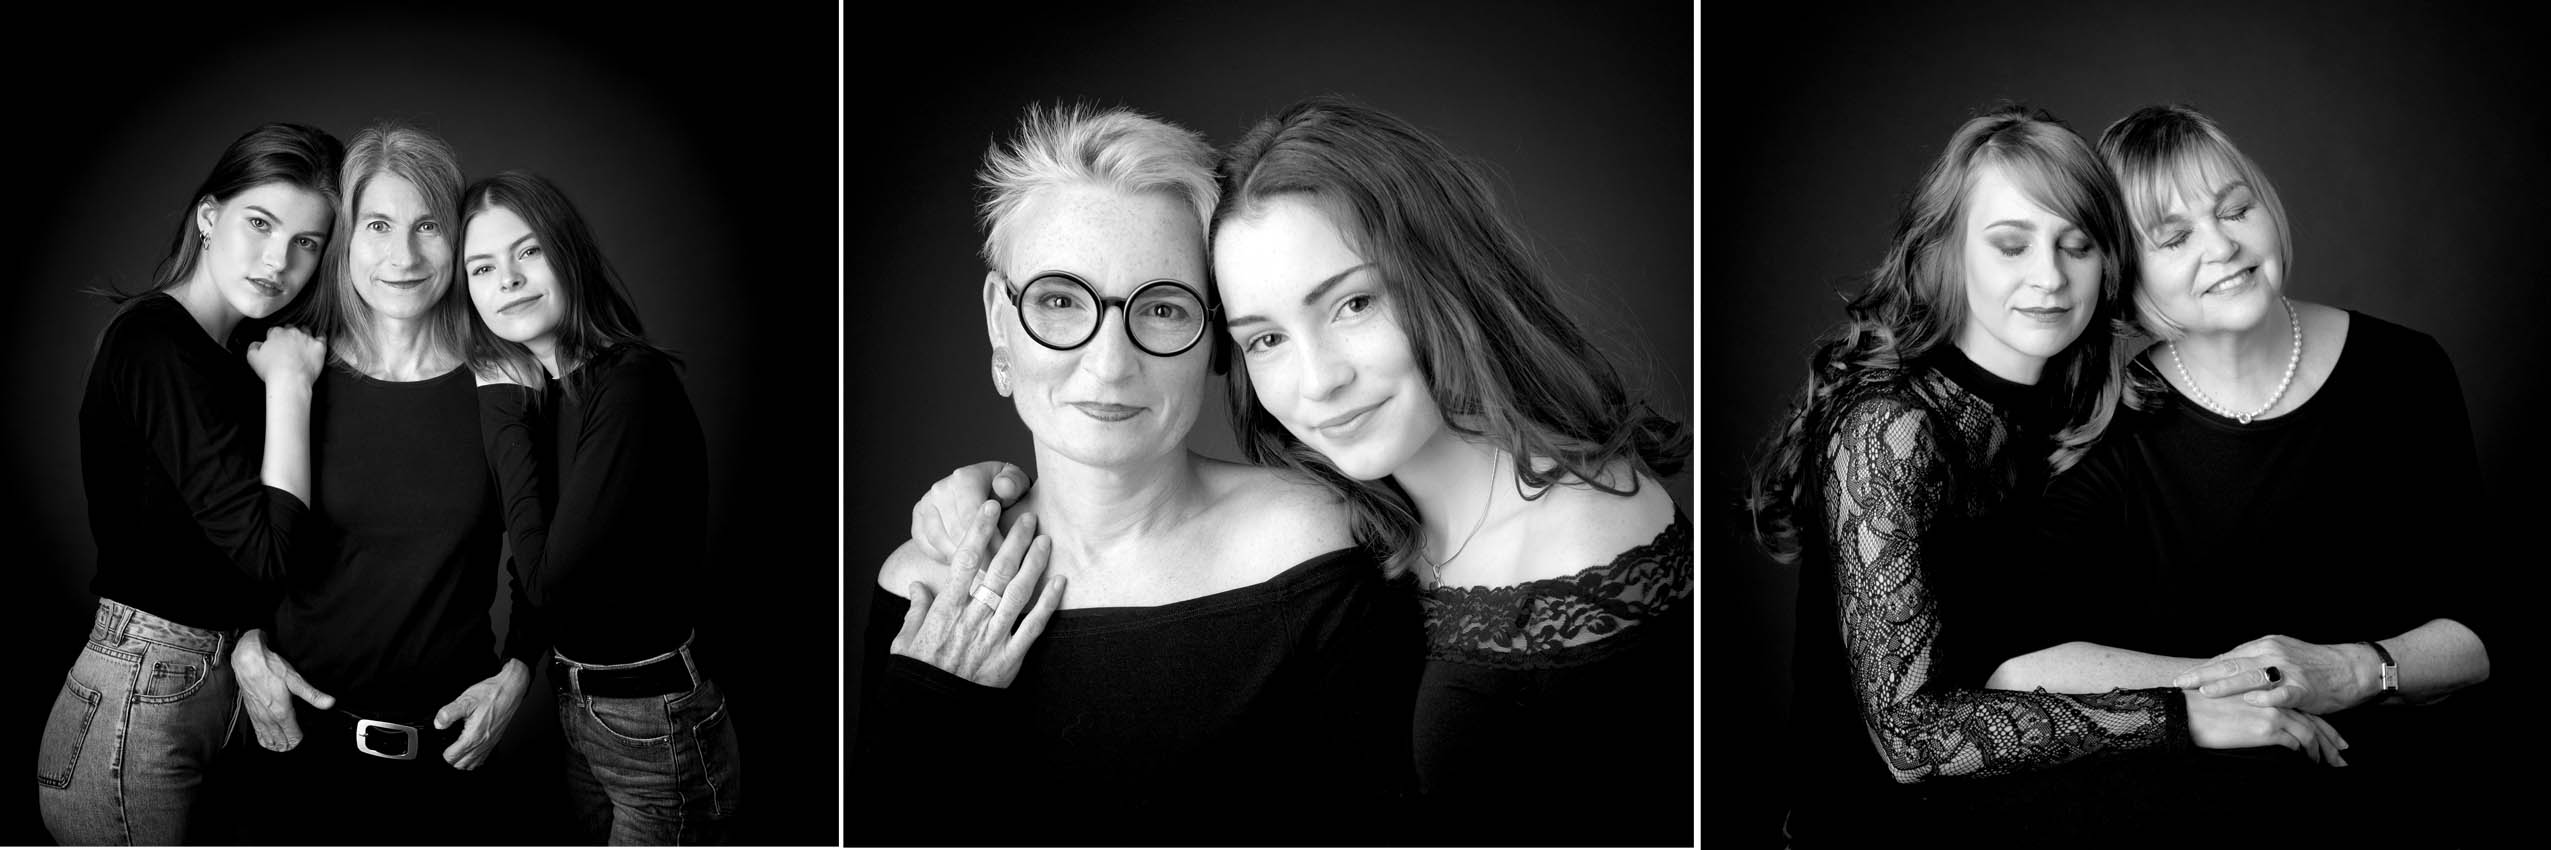 Mutter und Tochter Portrait